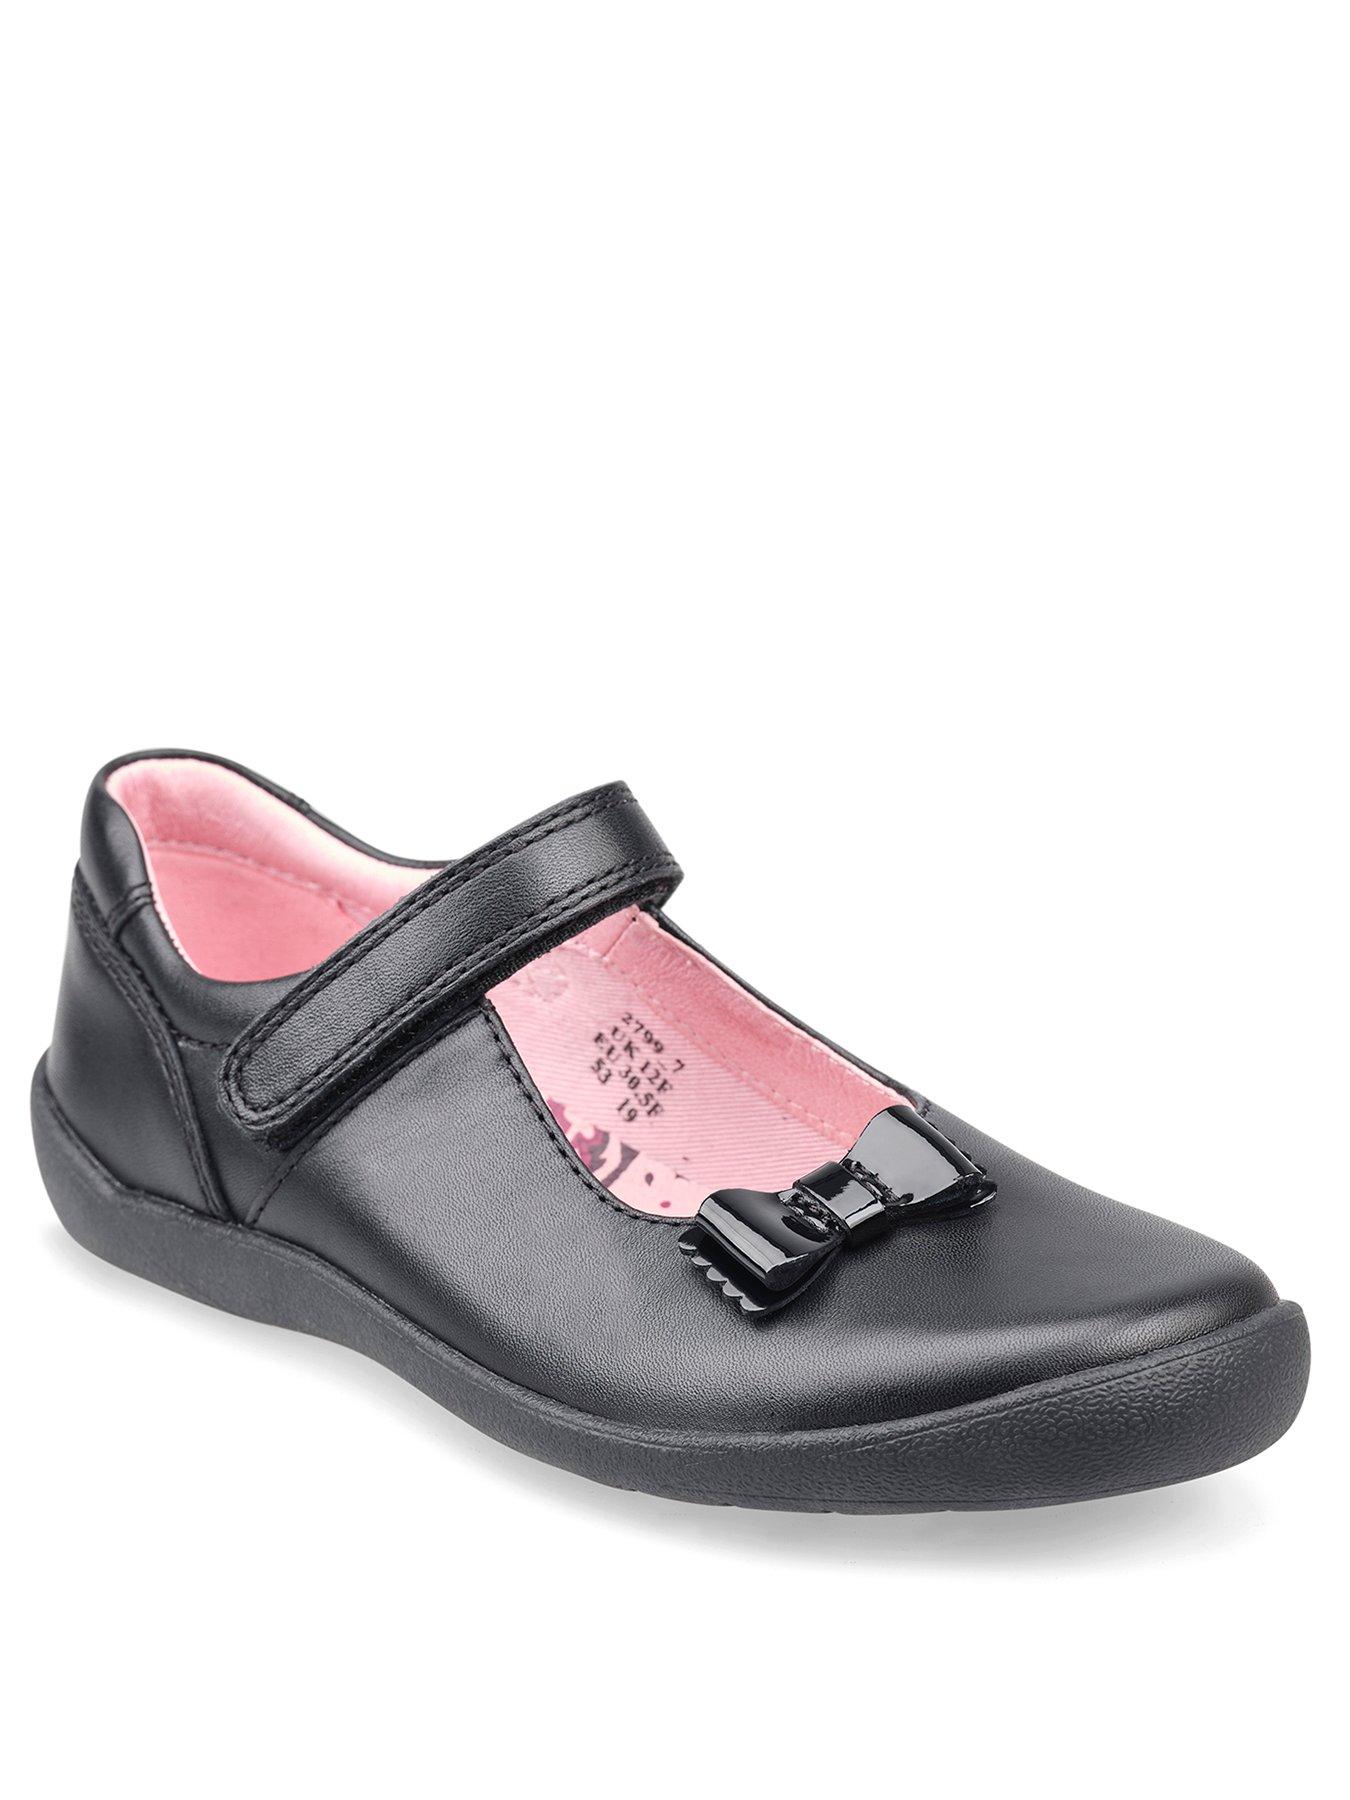 narrow girls school shoes